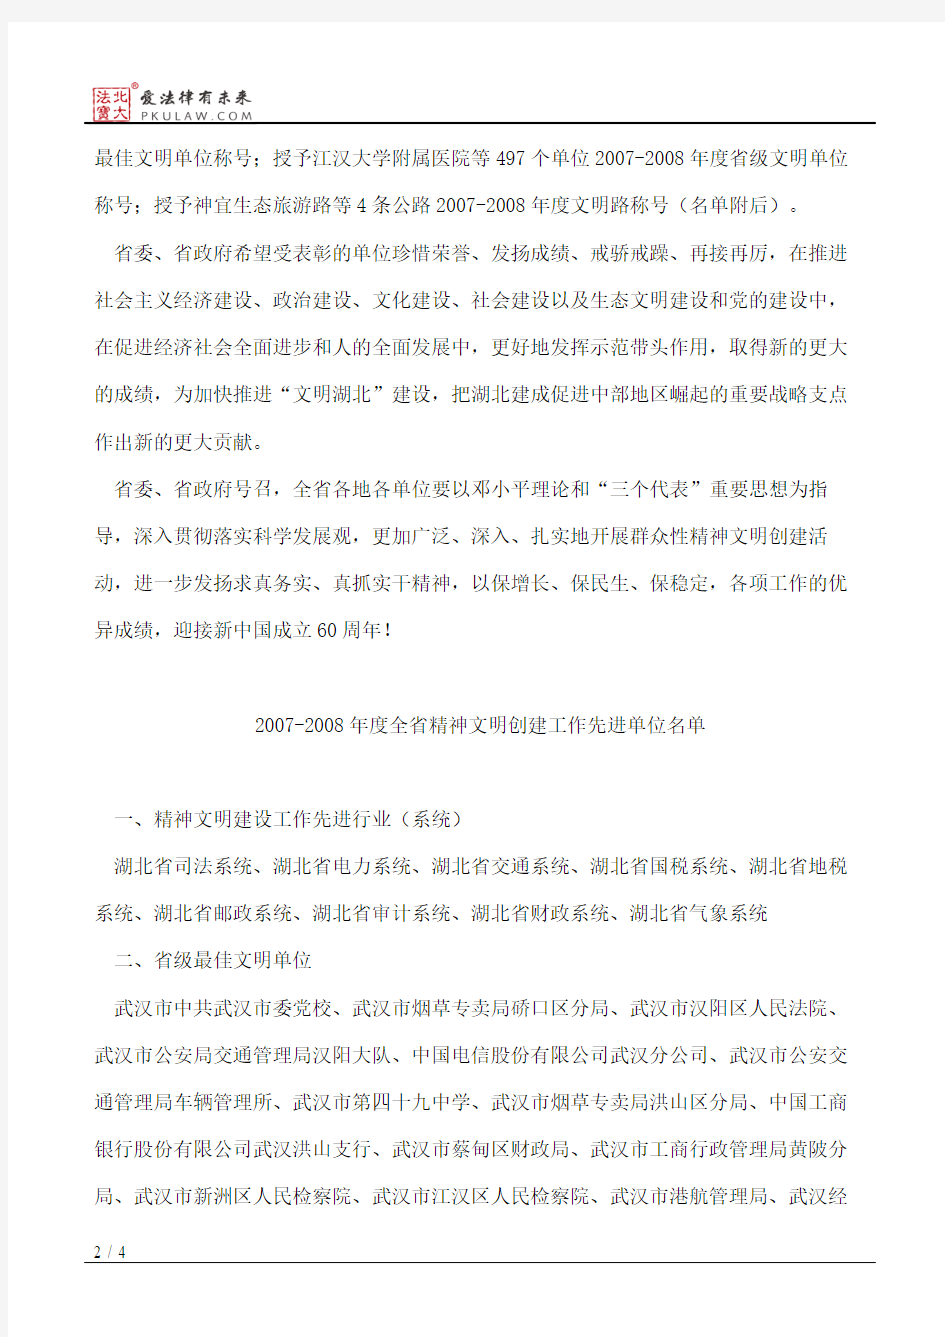 中共湖北省委、湖北省人民政府关于命名表彰全省文明创建先进单位的决定